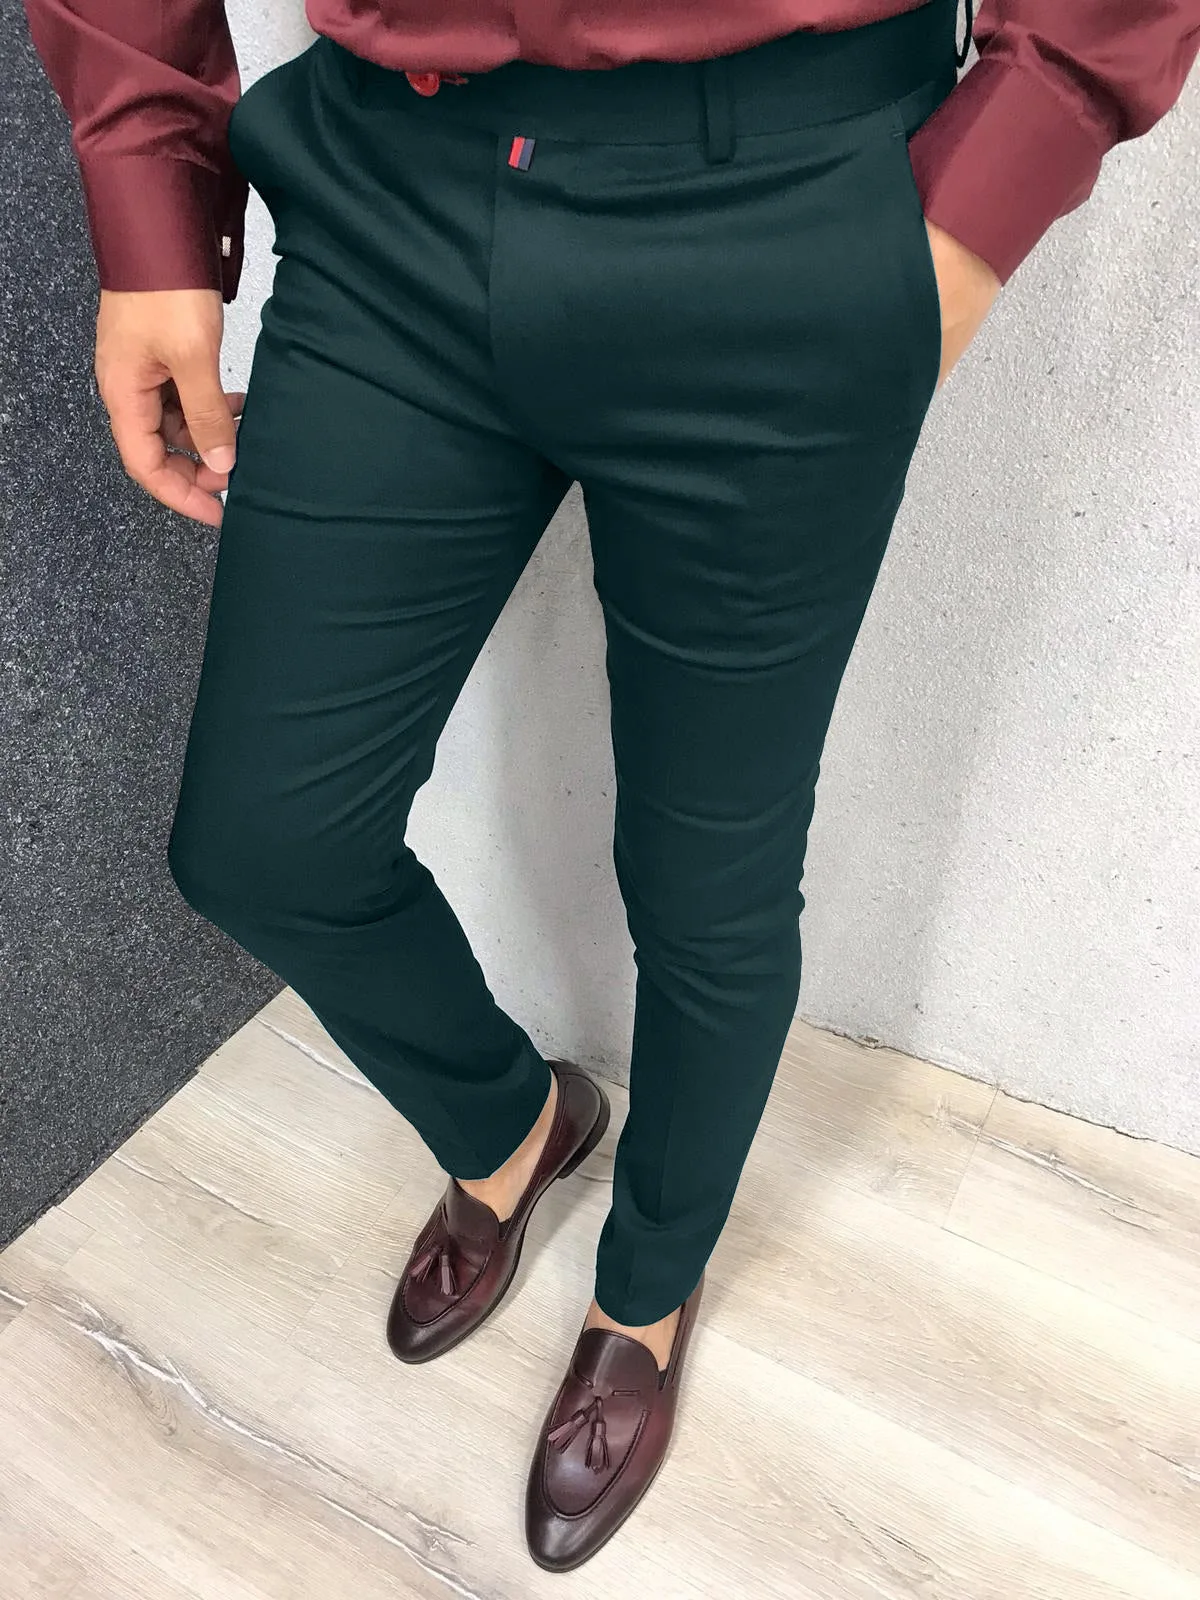 New Fashion Men's Suits Pants Slim Fit Pencil Pants Vintage Solid Color Buttoned Business Casual Trousers Male Clothes Pants Man 6